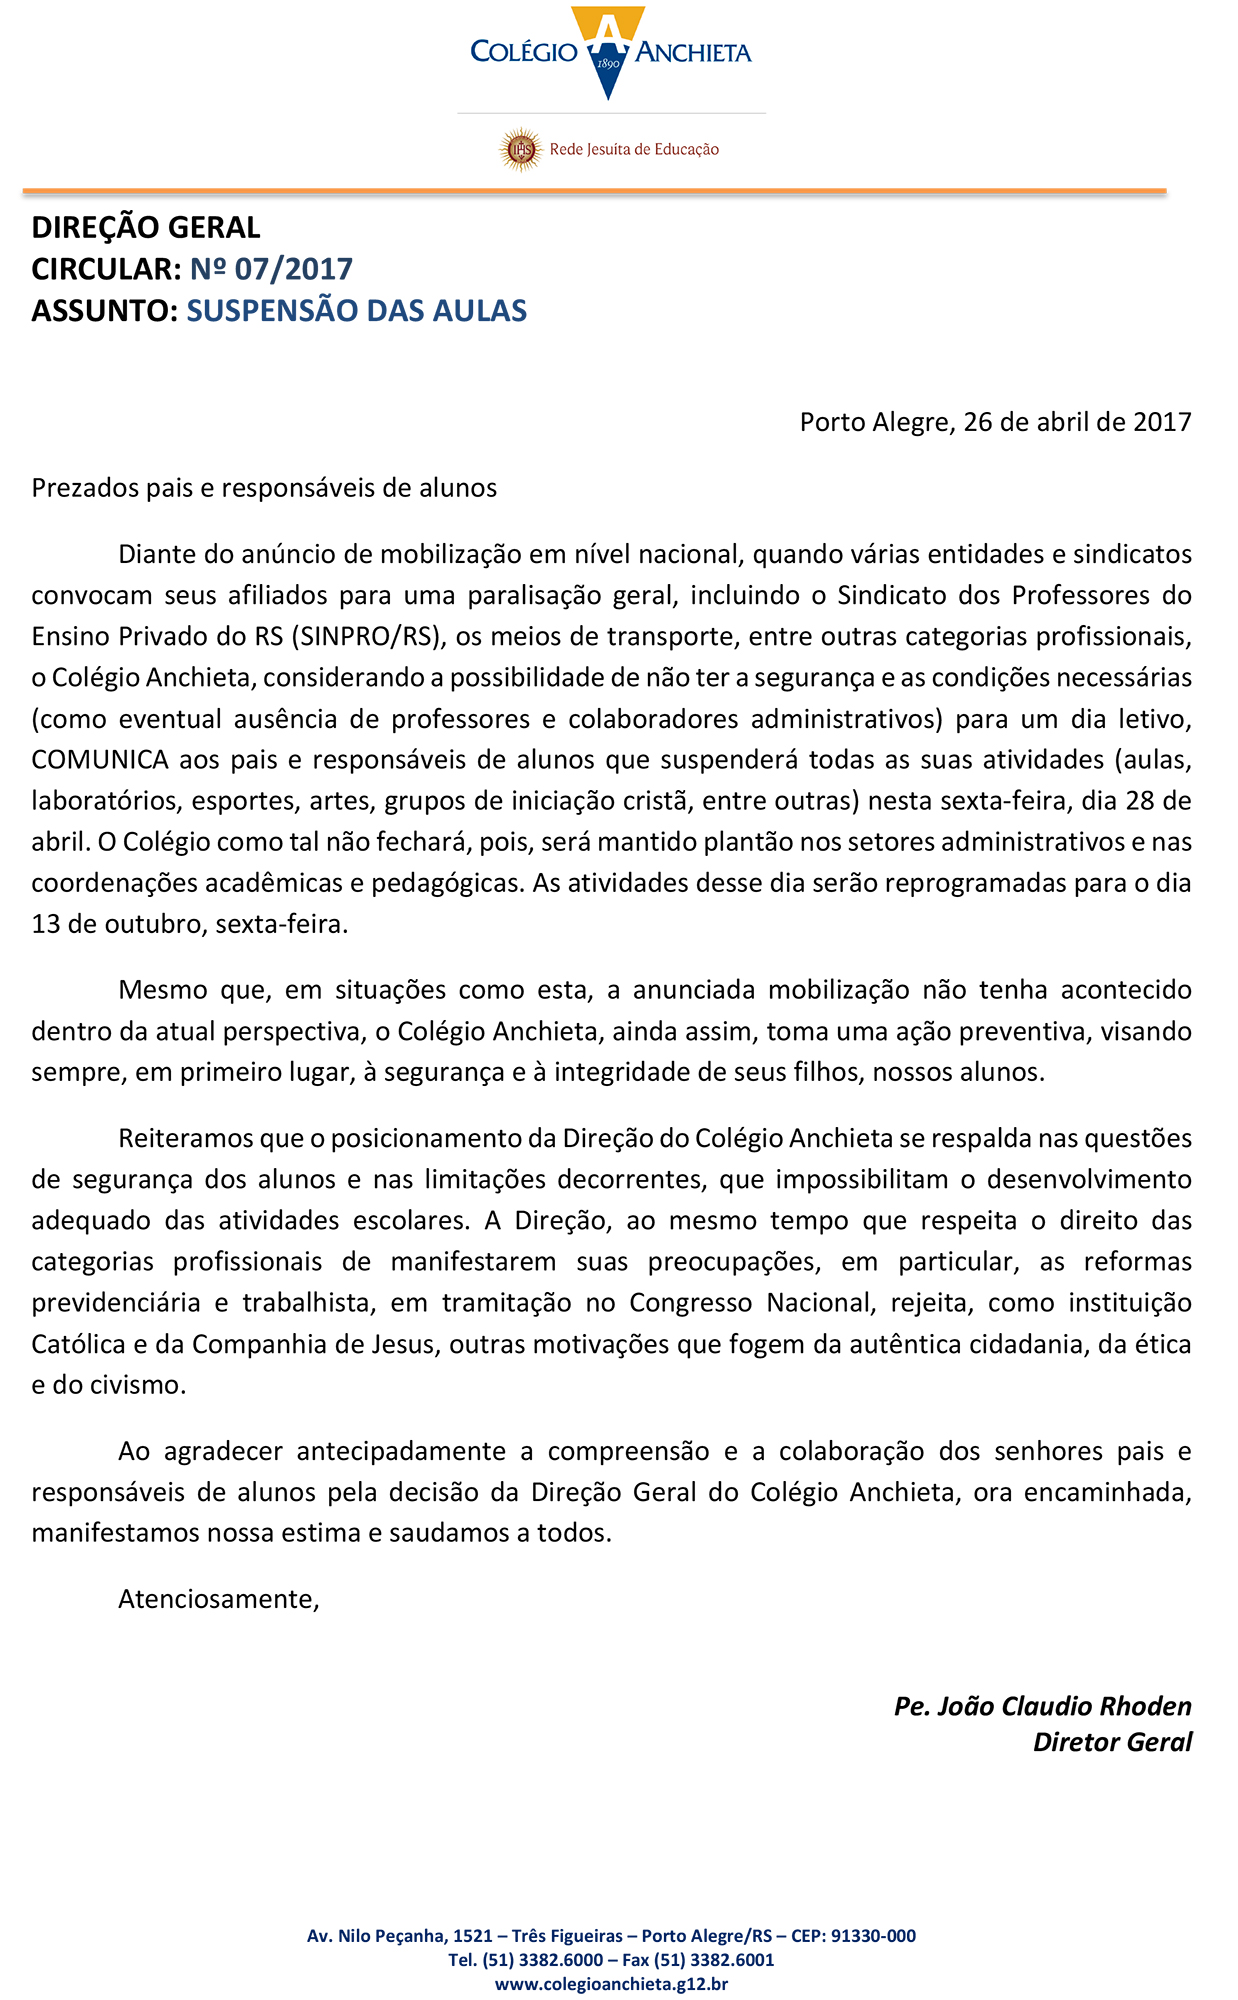 Microsoft Word - circular 07 - SUSPENSÃO DAS AULAS.docx